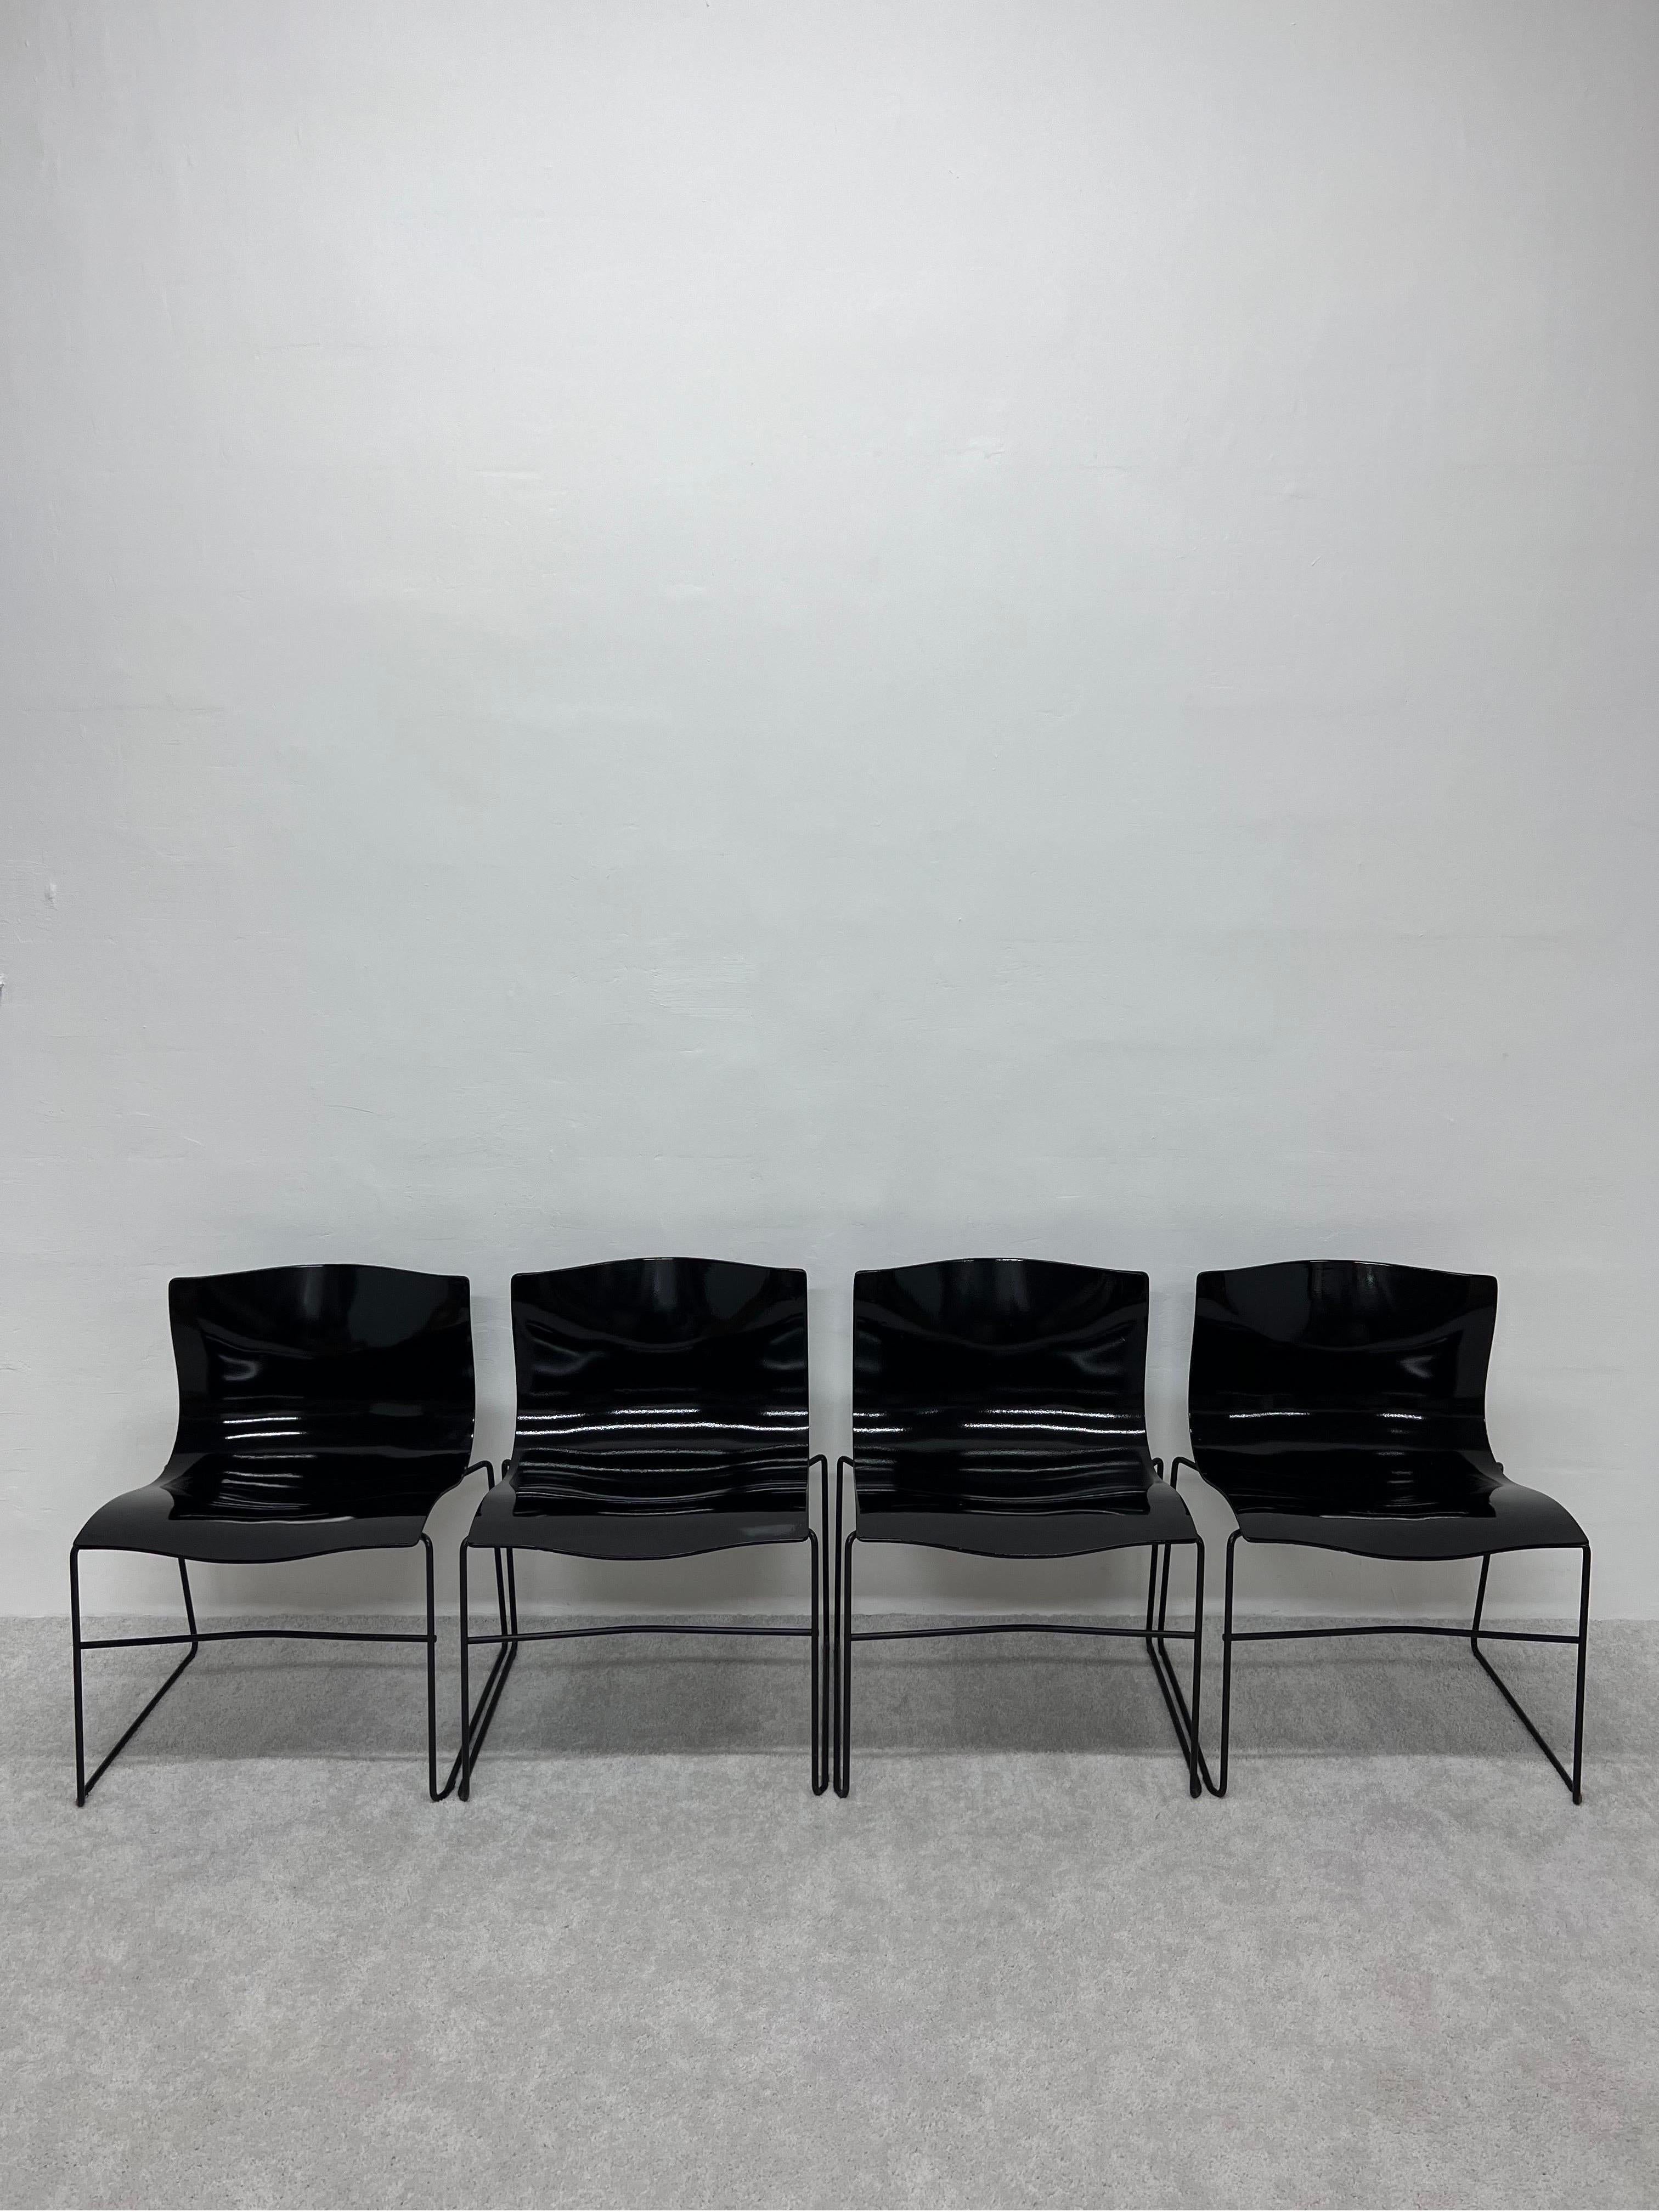 Chaises Mouchoir sur cadre laqué noir brillant de Lella et Massimo Vignelli pour Knoll.

En 1968, Knoll a demandé à Vignelli de revoir l'identité de l'entreprise et le programme graphique, ce qui a donné naissance au logo Knoll en Helvetica et à